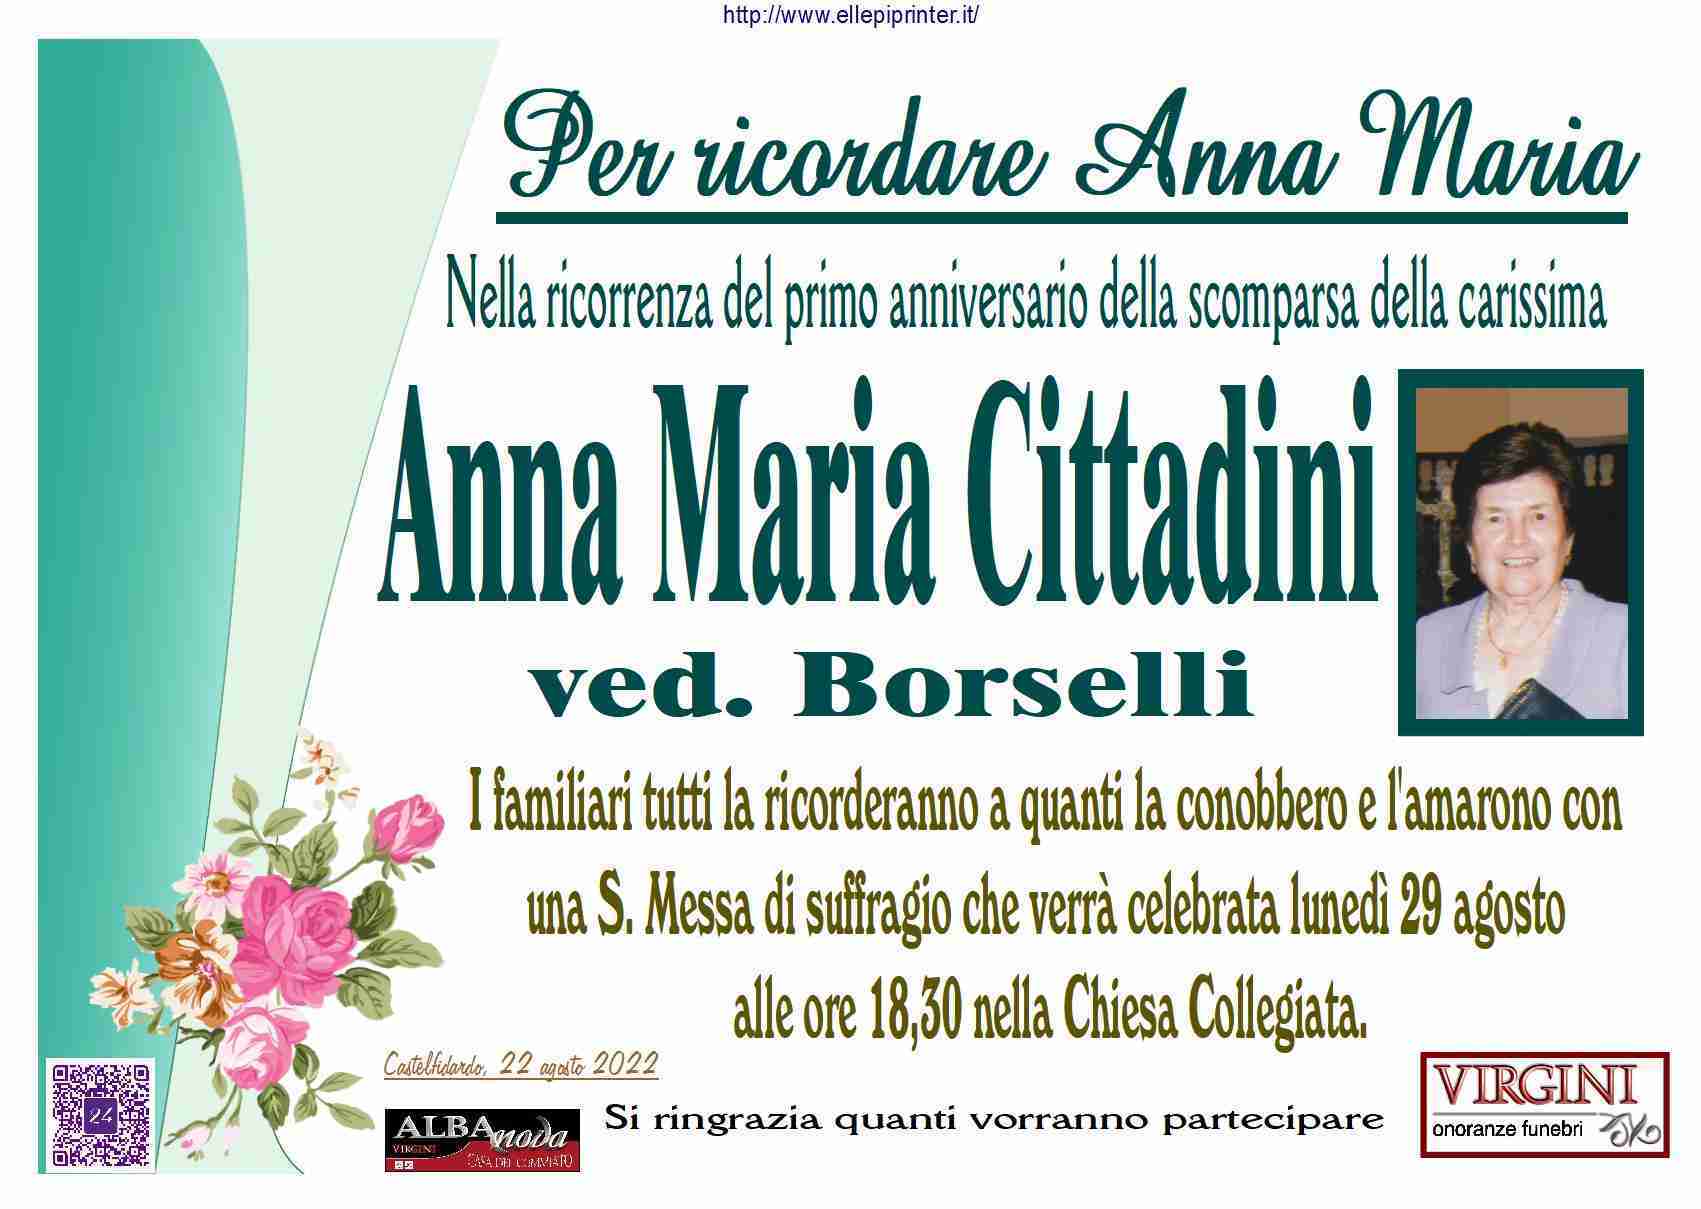 Anna Maria Cittadini